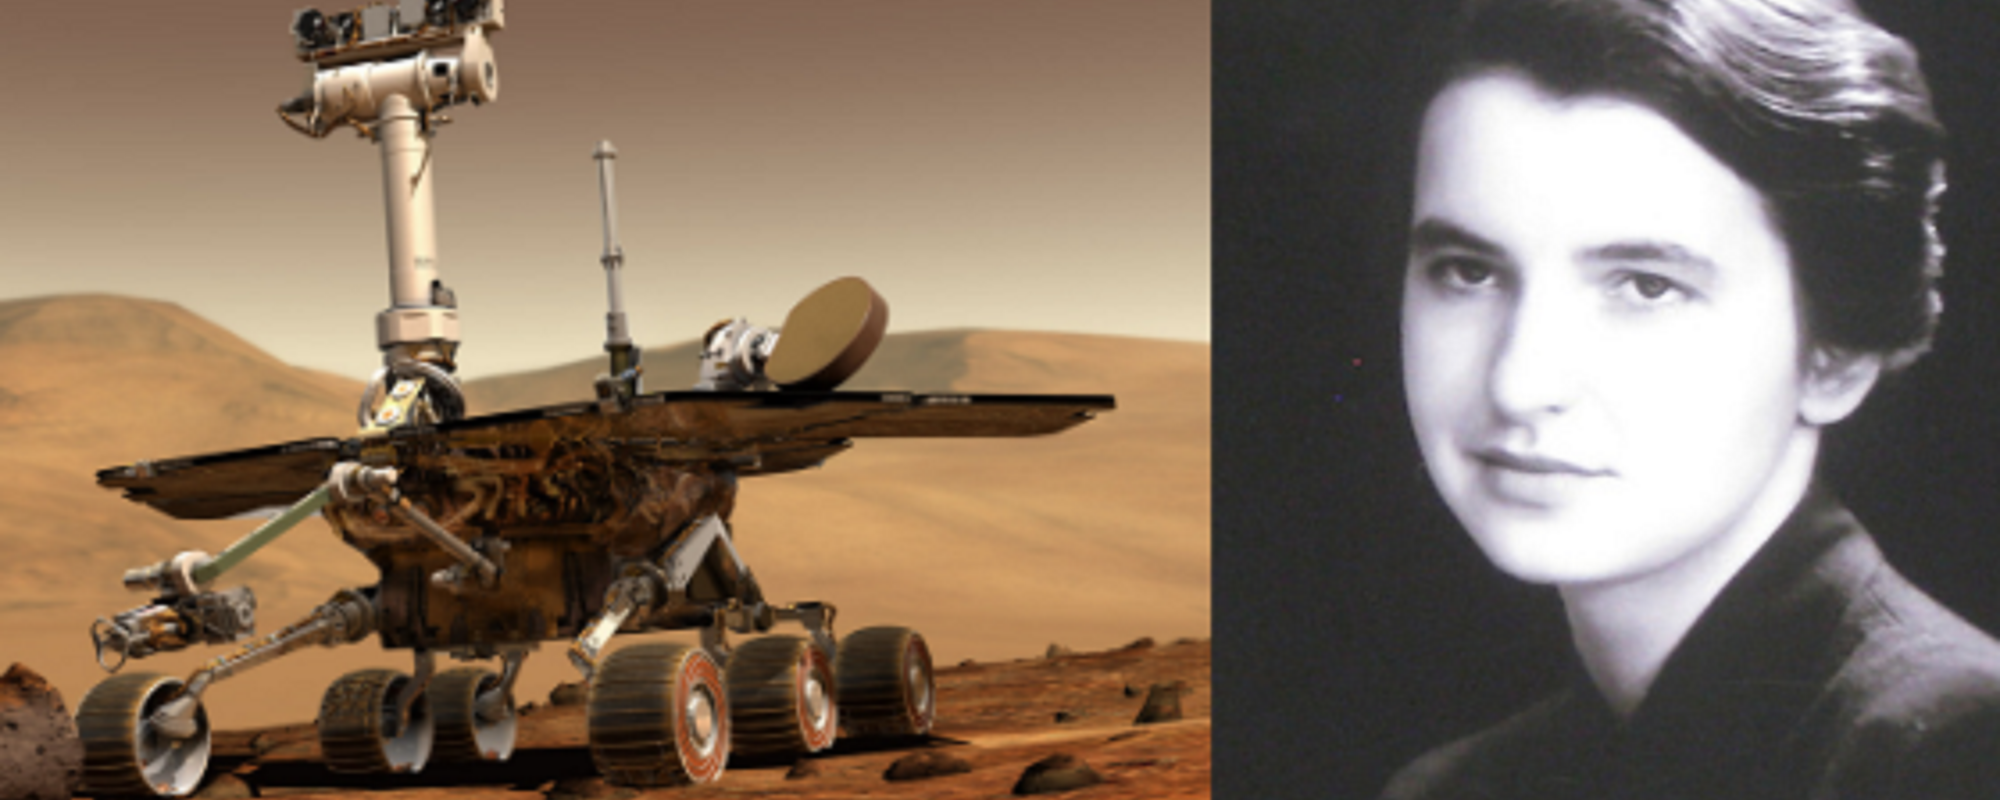 Rosalin Franklin, el nuevo rover explorador de Marte